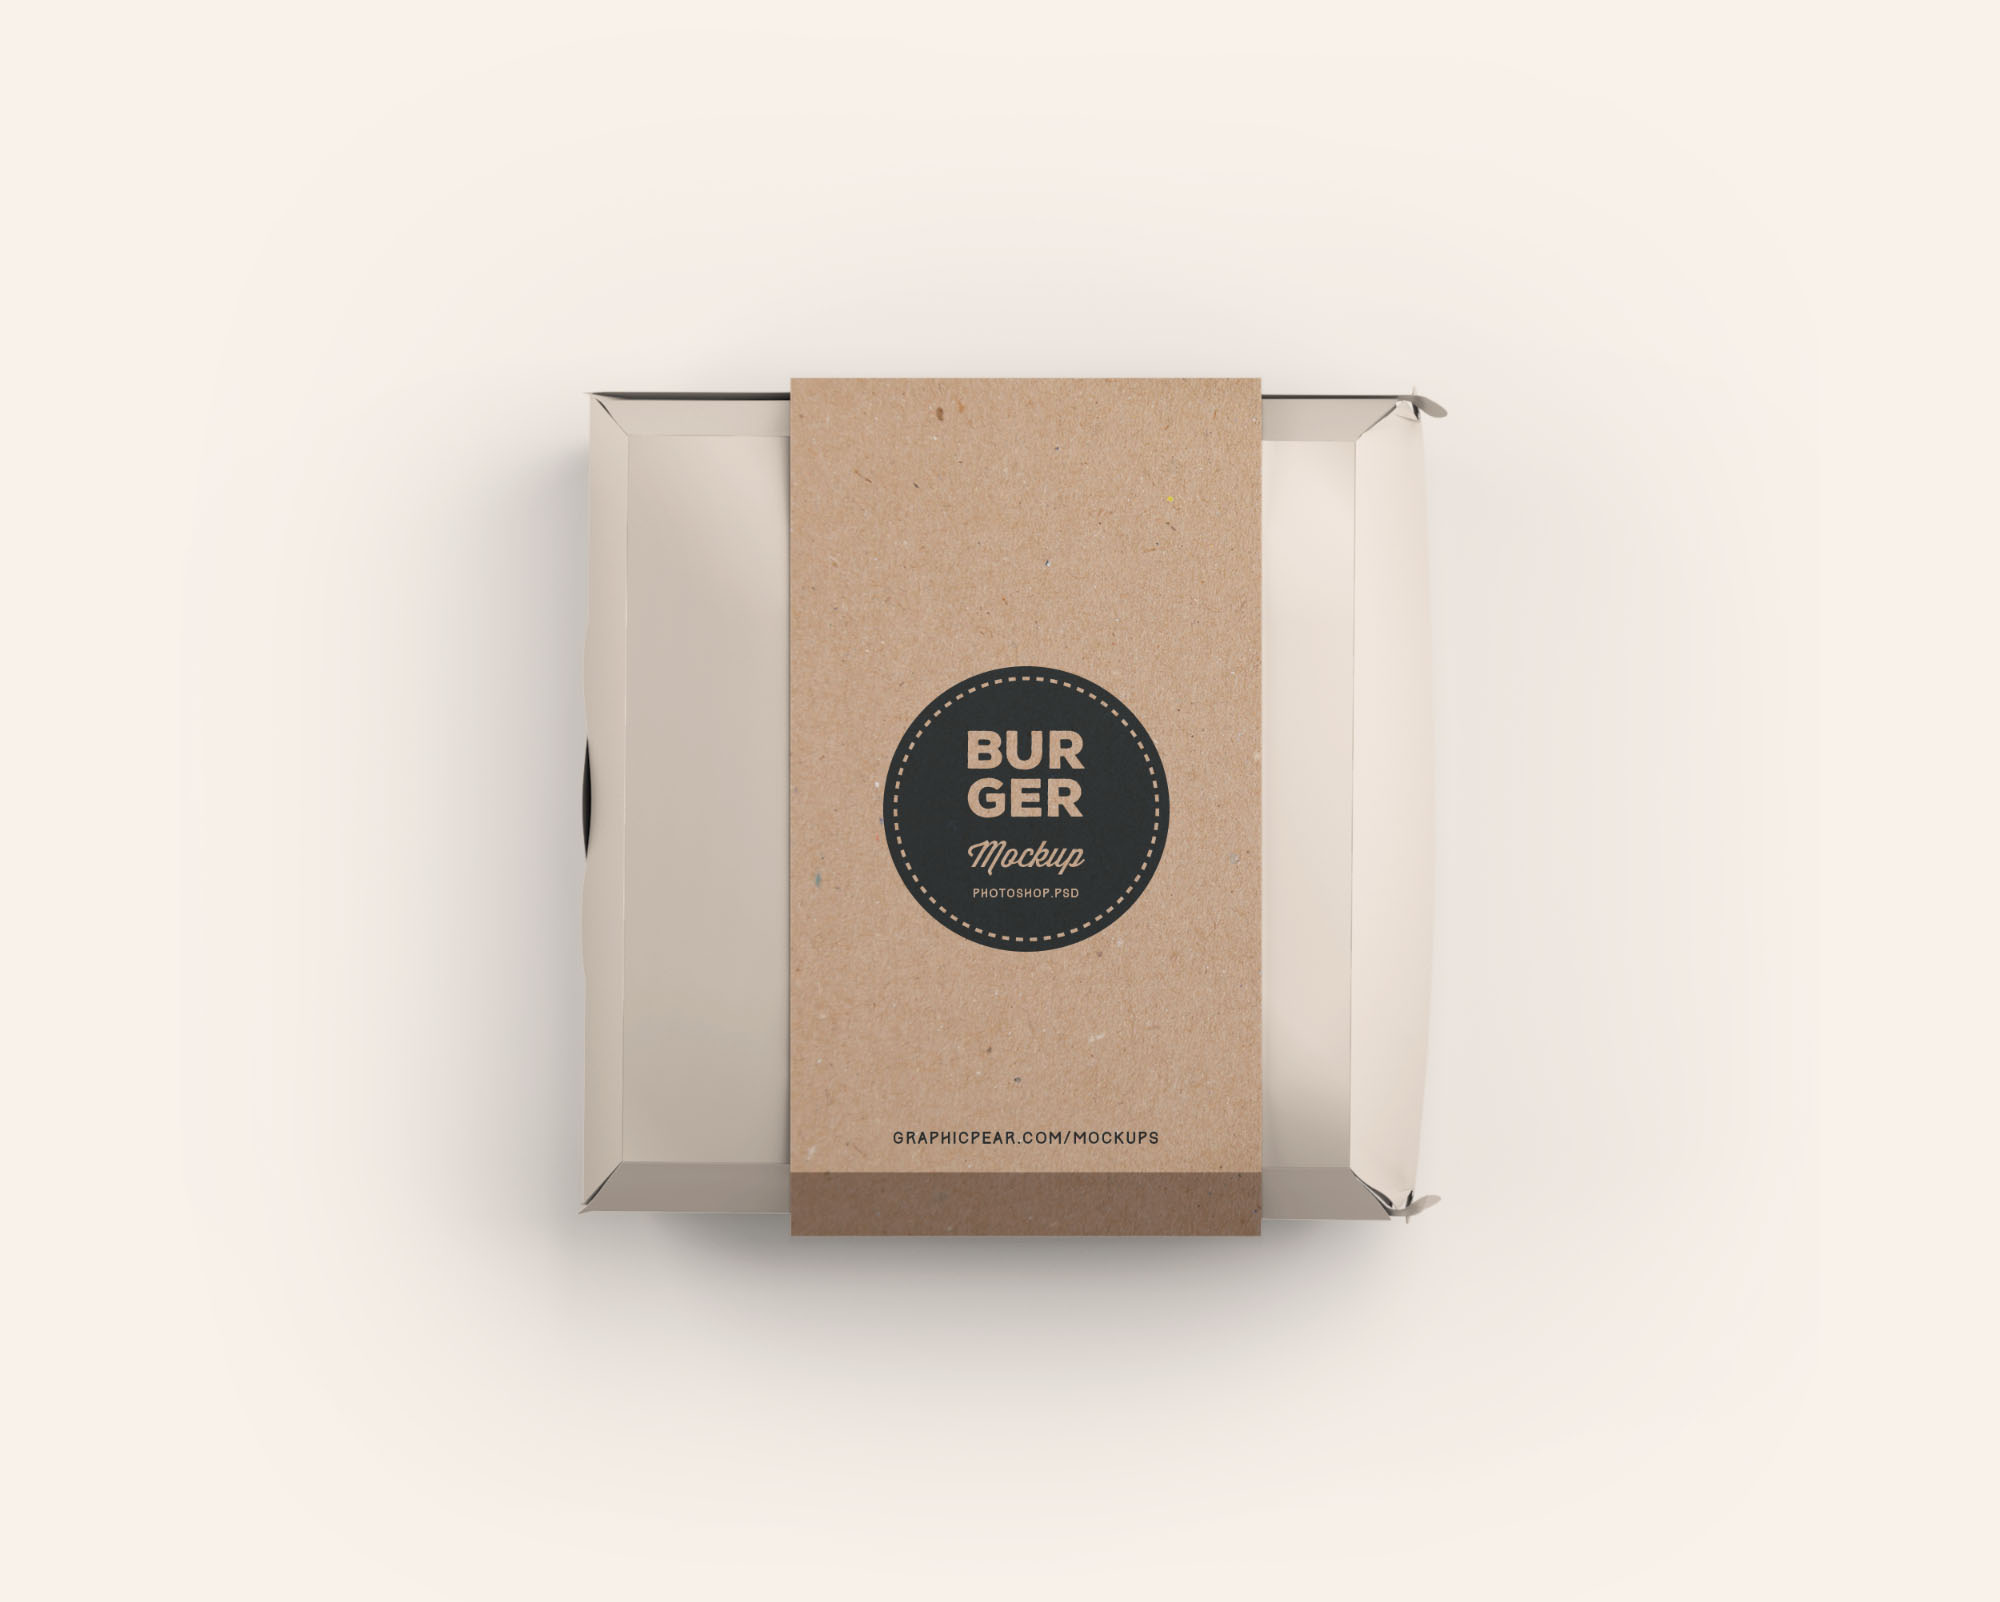 汉堡包装盒设计效果图样机模板 Burger Box Package Mockup插图